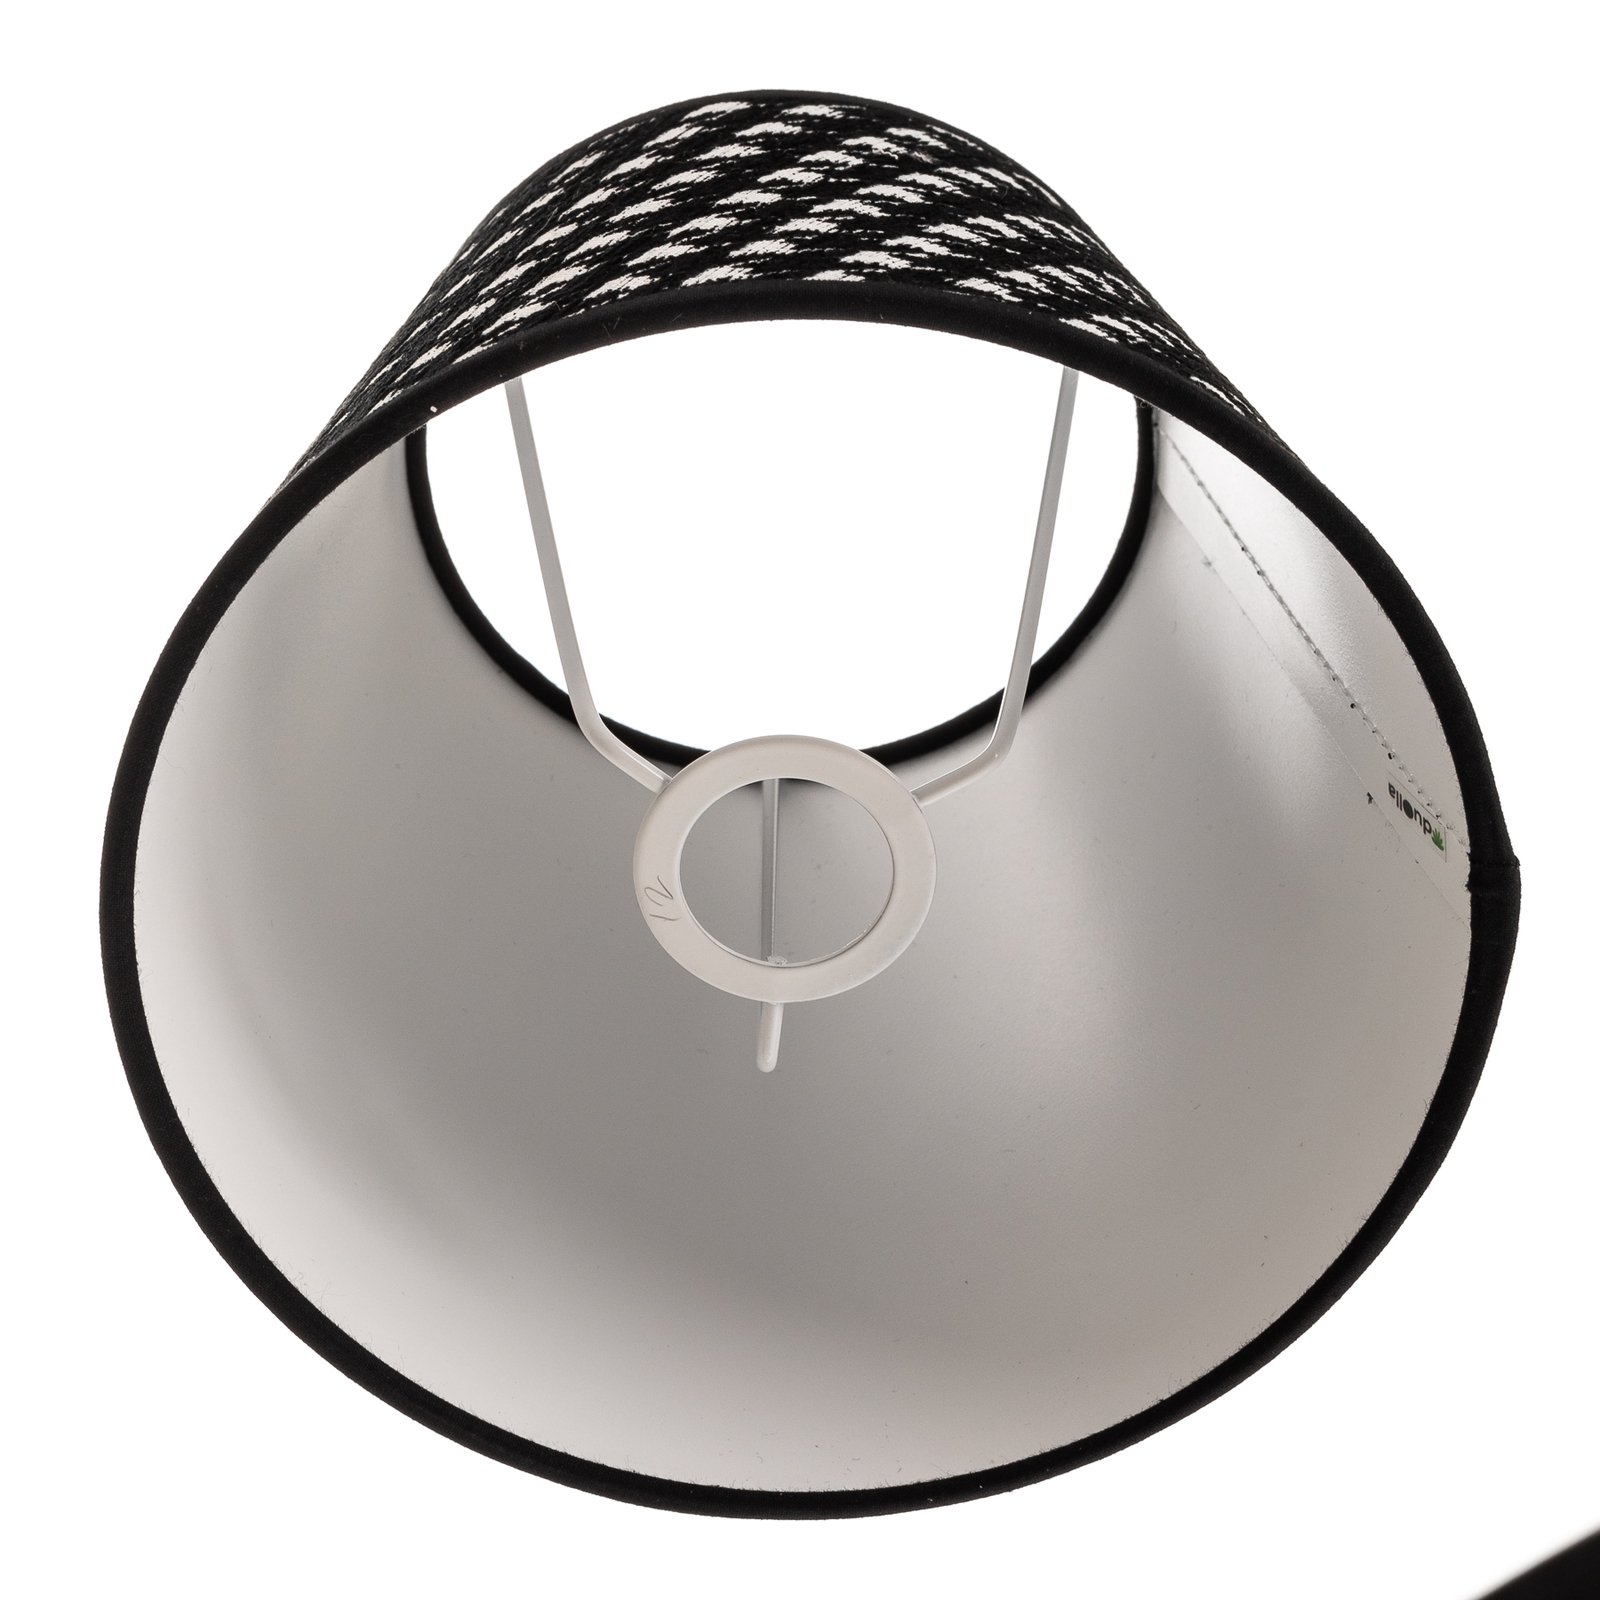 Sofia lámpaernyő 15,5cm, tyúklábmintás fekete